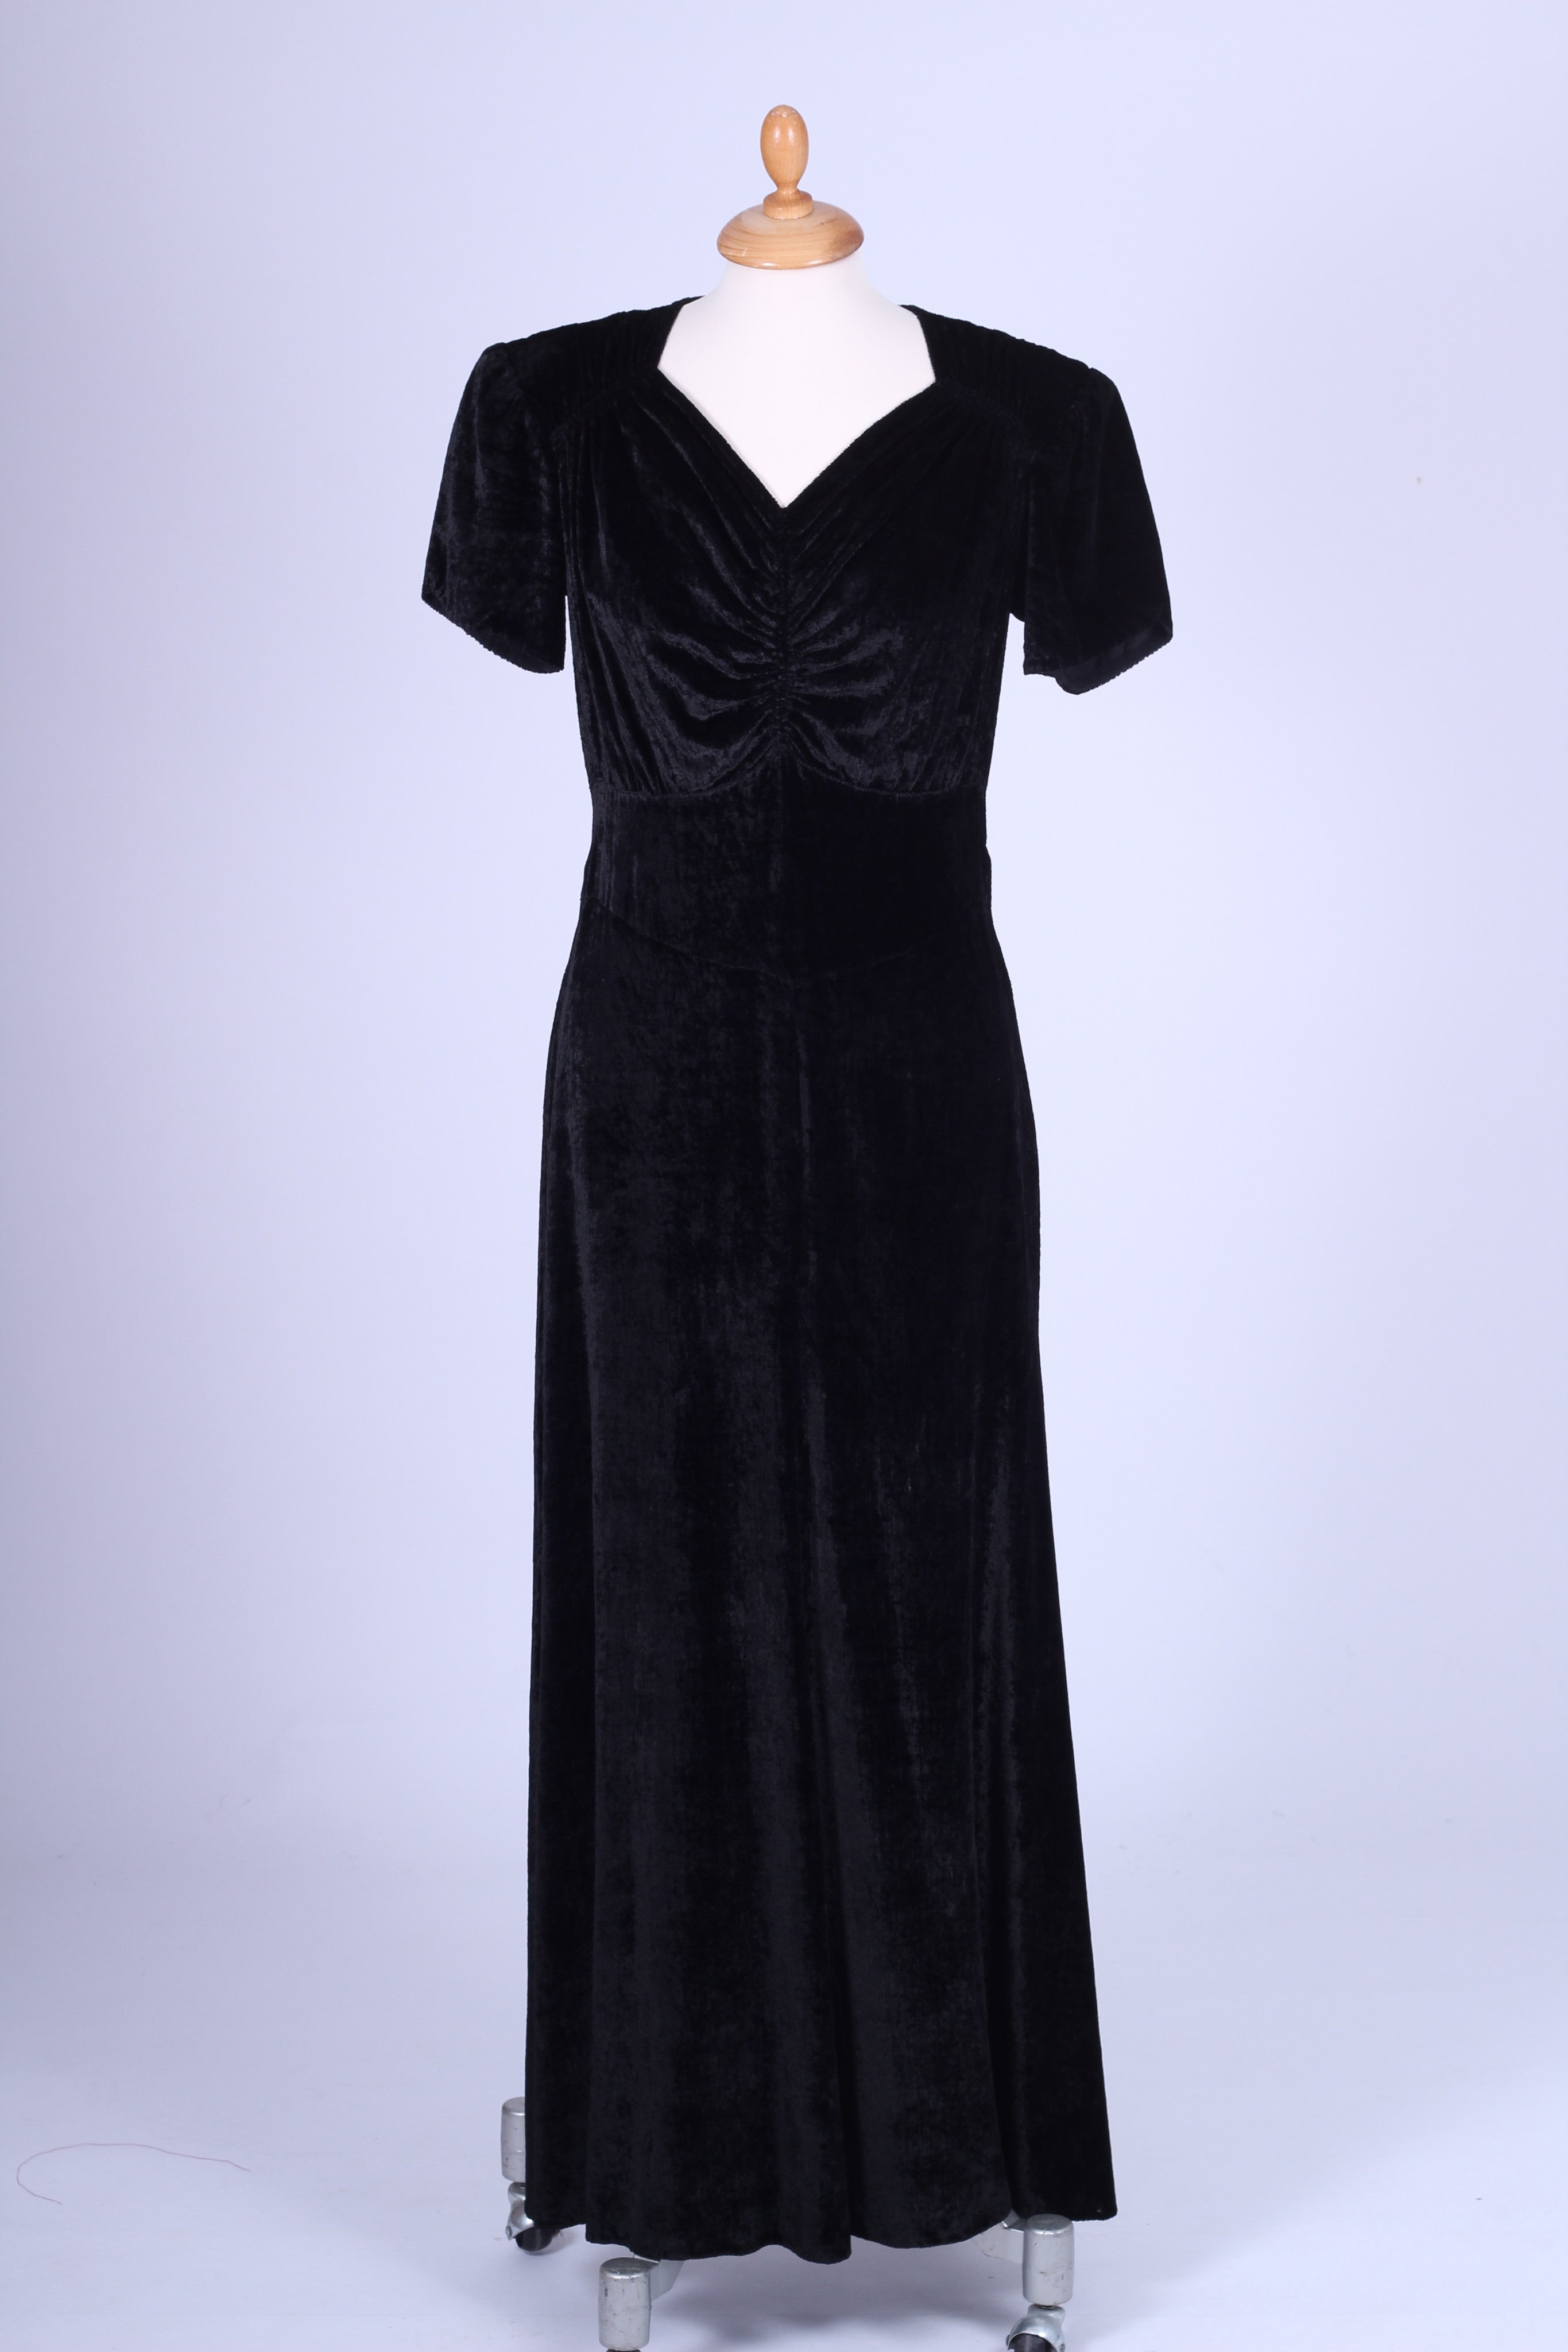 Sort velour kjole 1930. S